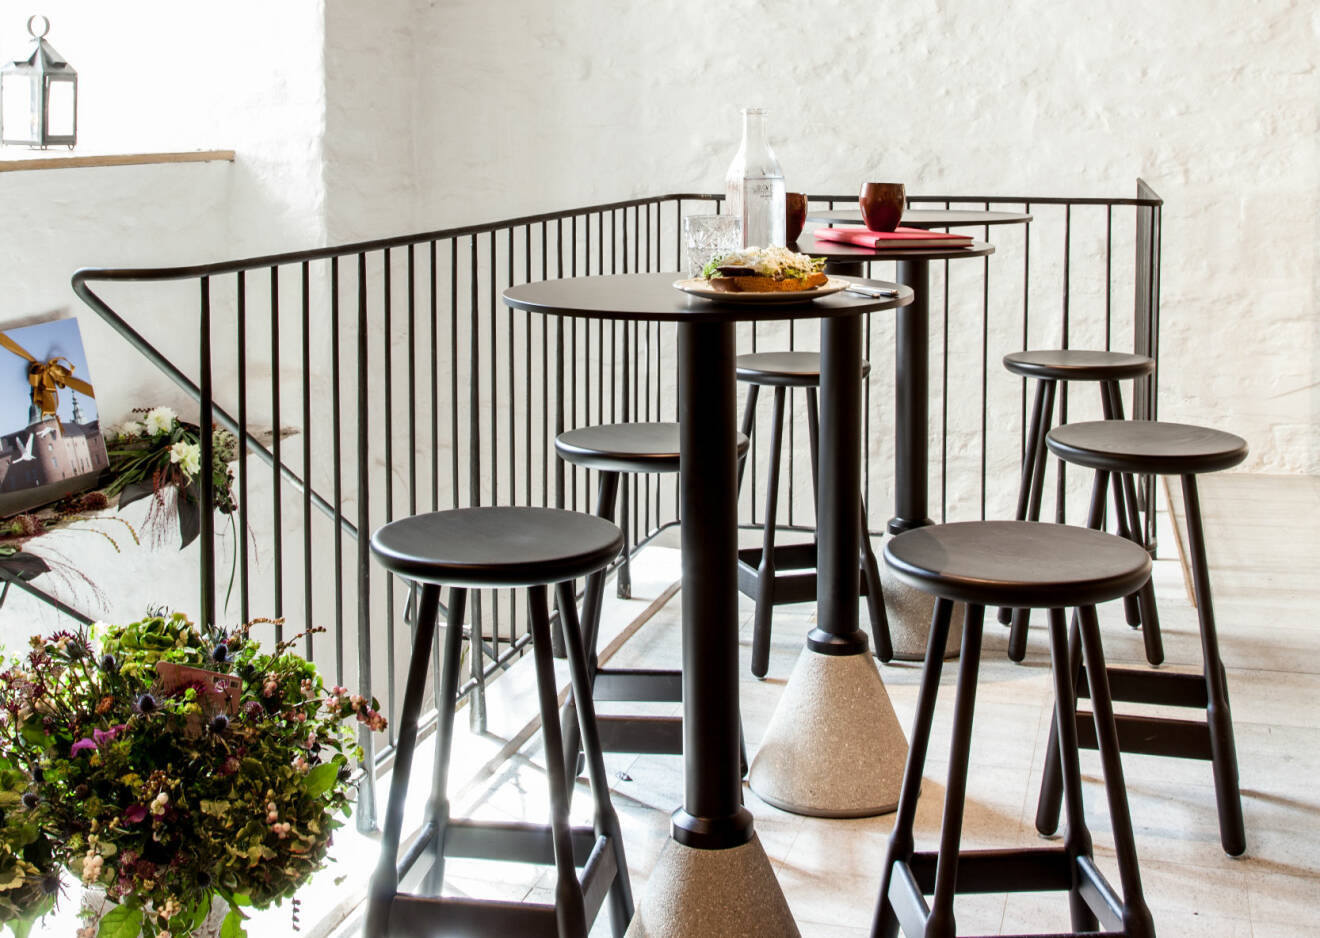 Vita stenväggar, mörka stolar och pallar och ett trappräcke i gjutjärn. På borden står en macka och kaffe. I hörnet skytaren stor bukett blommor.